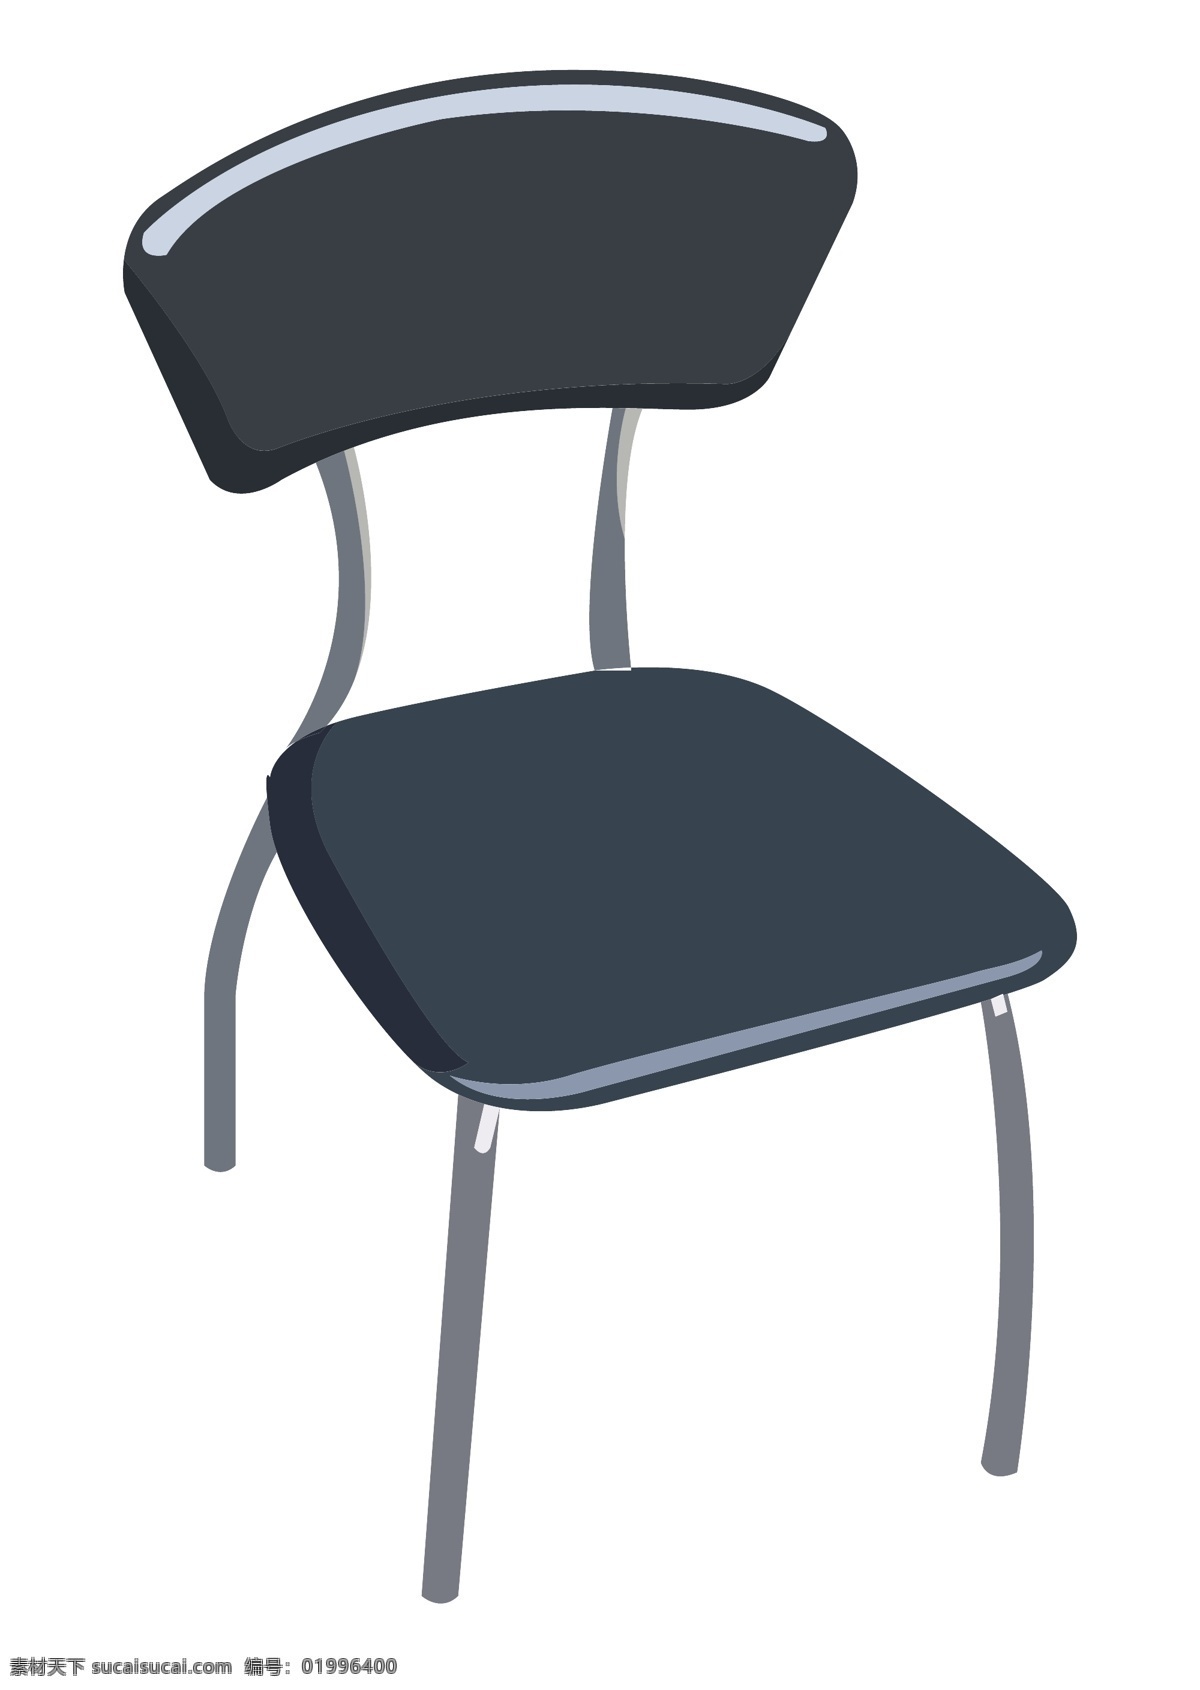 黑色 高档 靠背椅 插画 黑色的椅子 带靠背的椅子 黑色的板凳 时尚靠背椅 办公座椅 创意